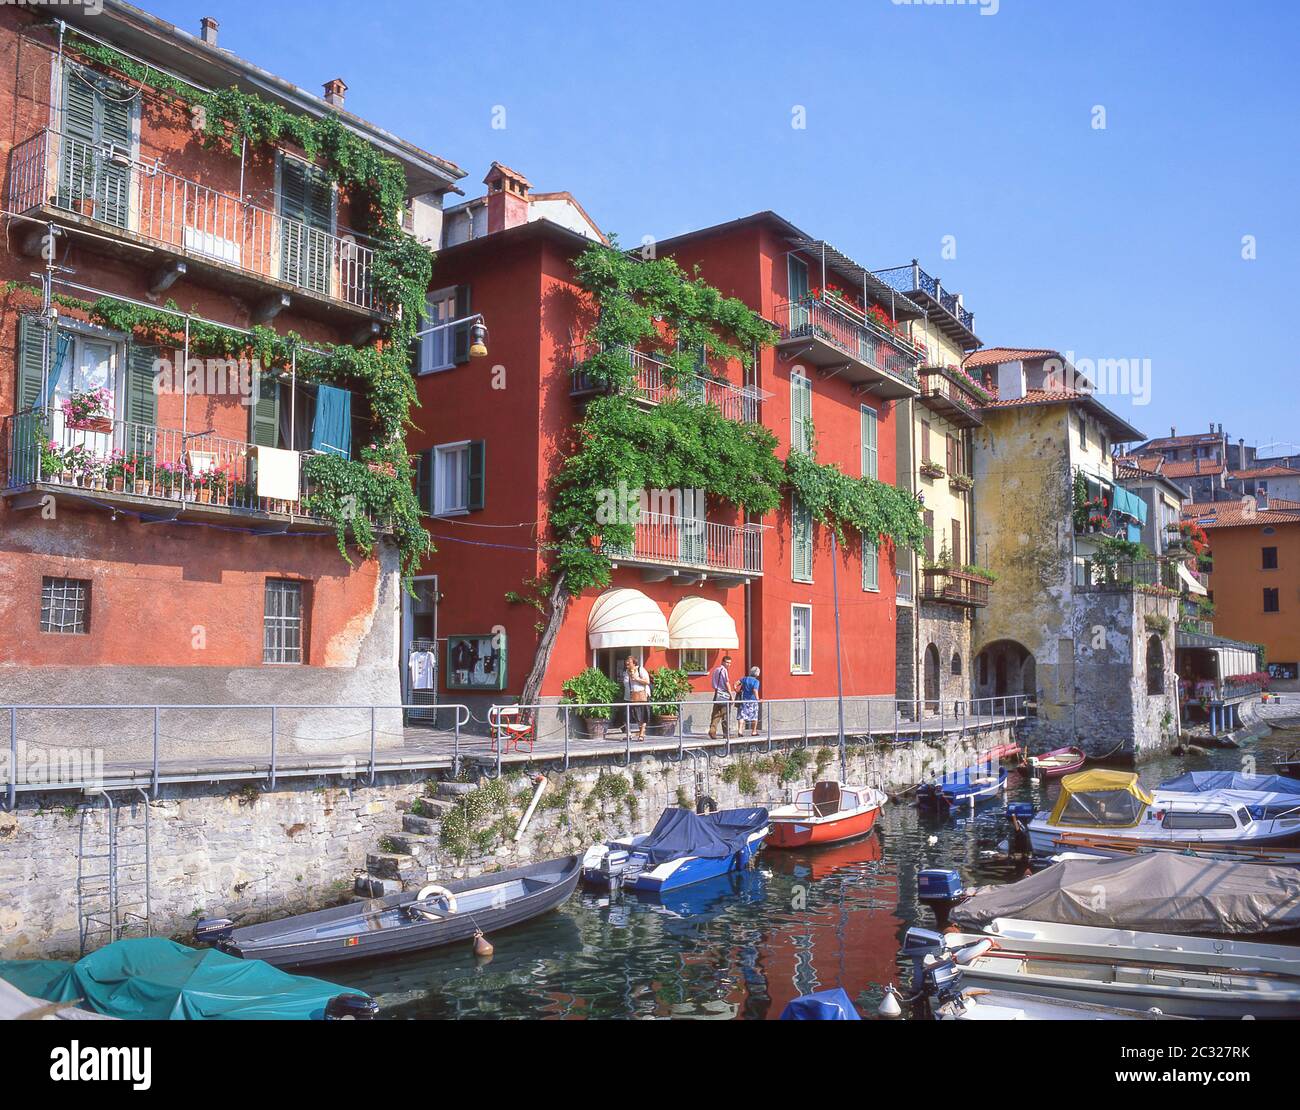 Boote in Hafen, Varenna, Comer See, Provinz Lecco, Lombardei Region, Italien Stockfoto